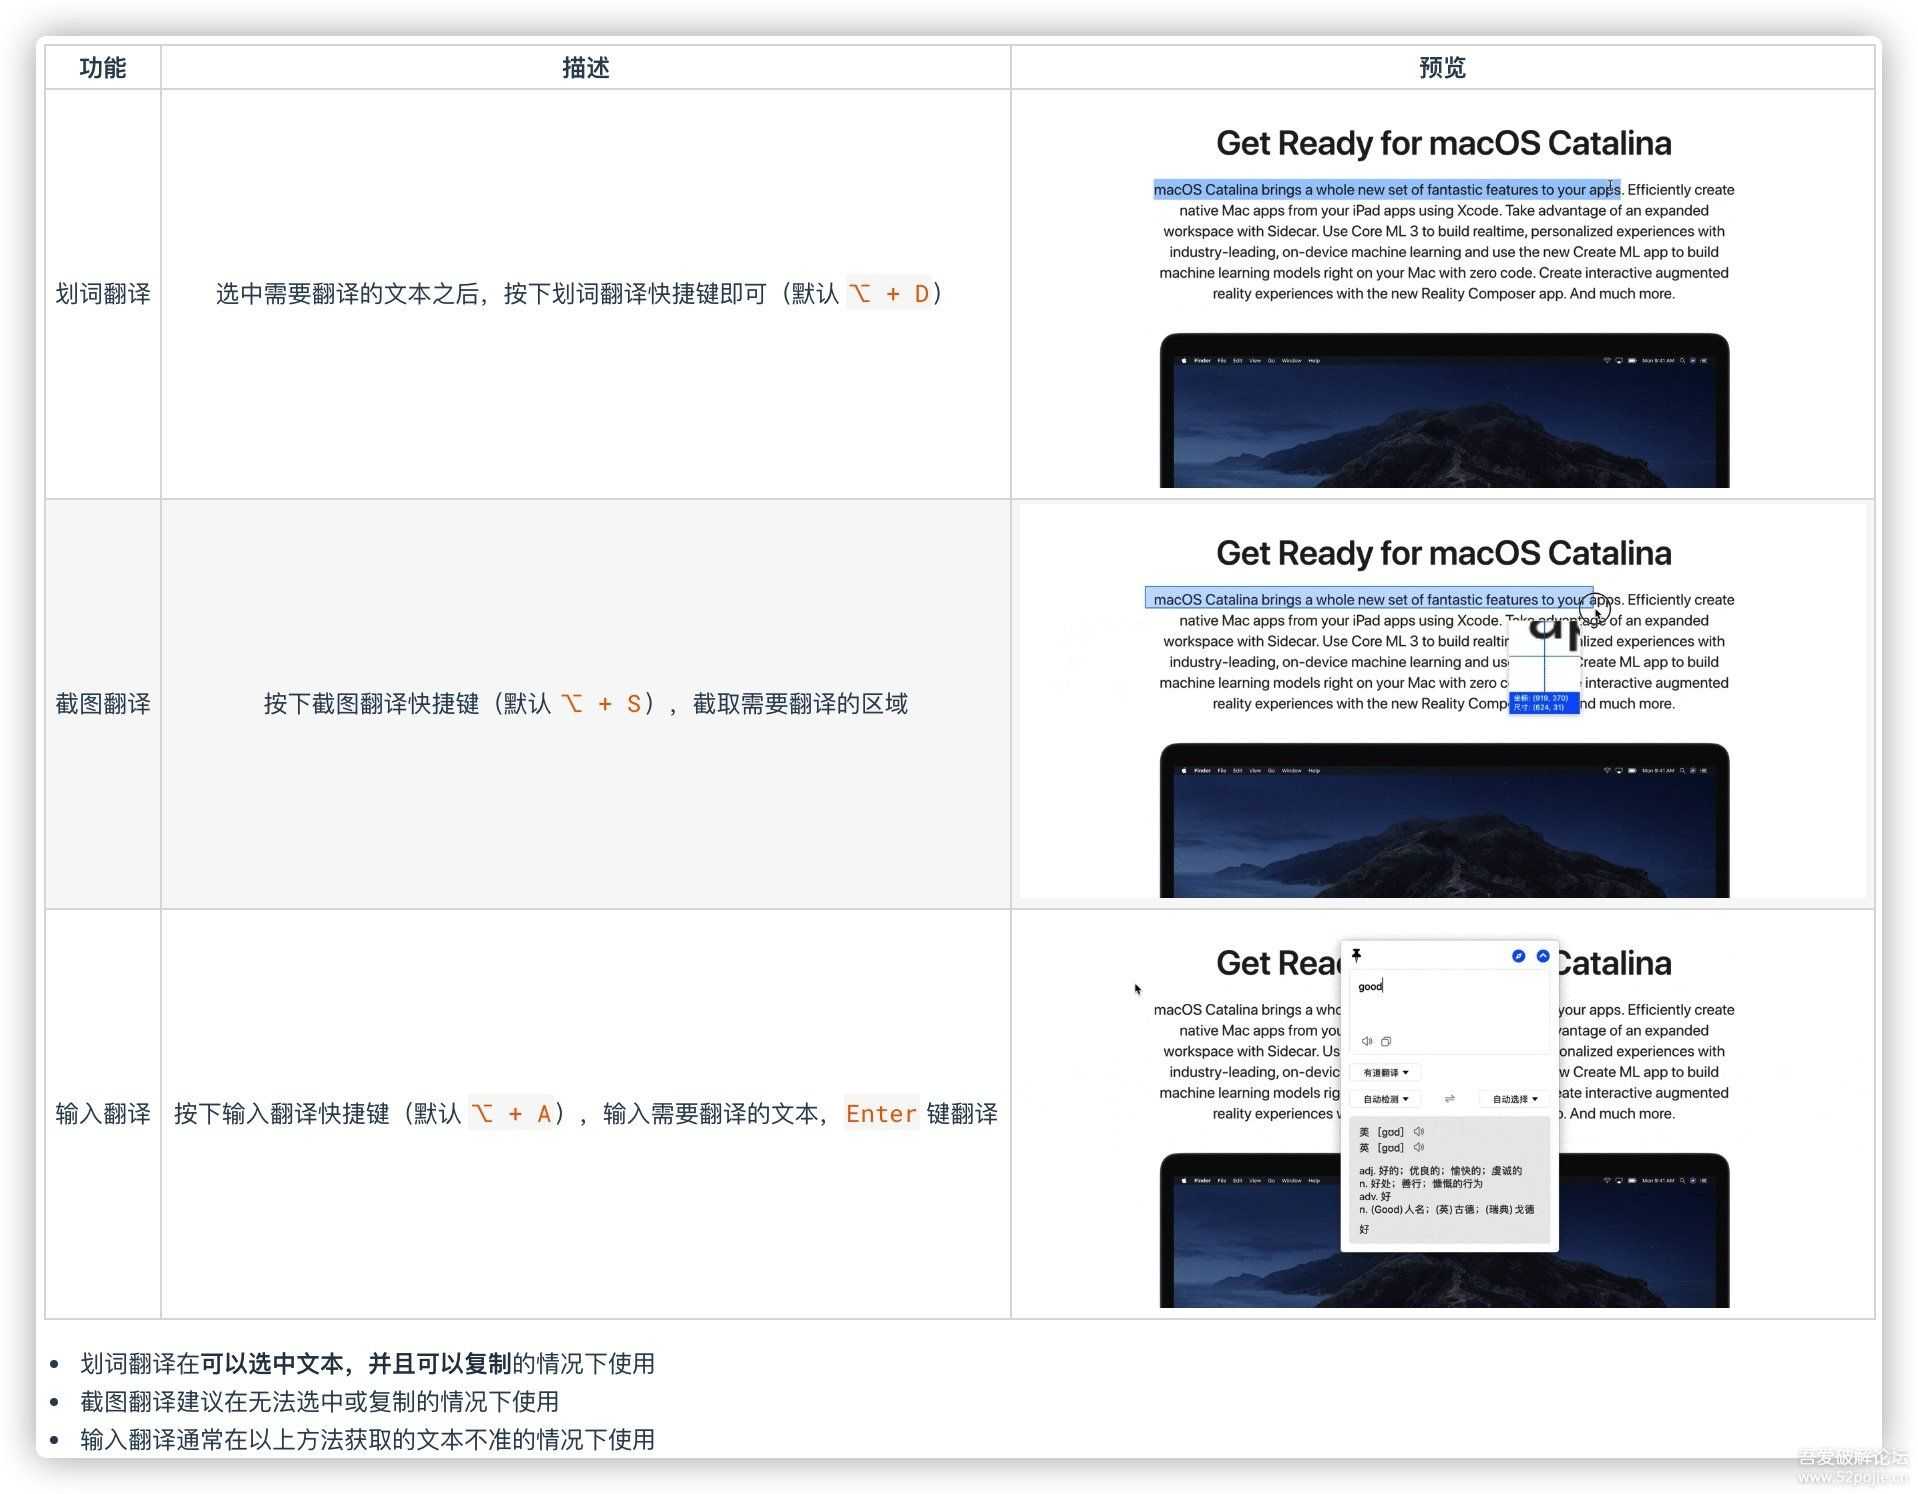 【更新】macOS 好用的宝藏翻译工具: Bob v0.6.1